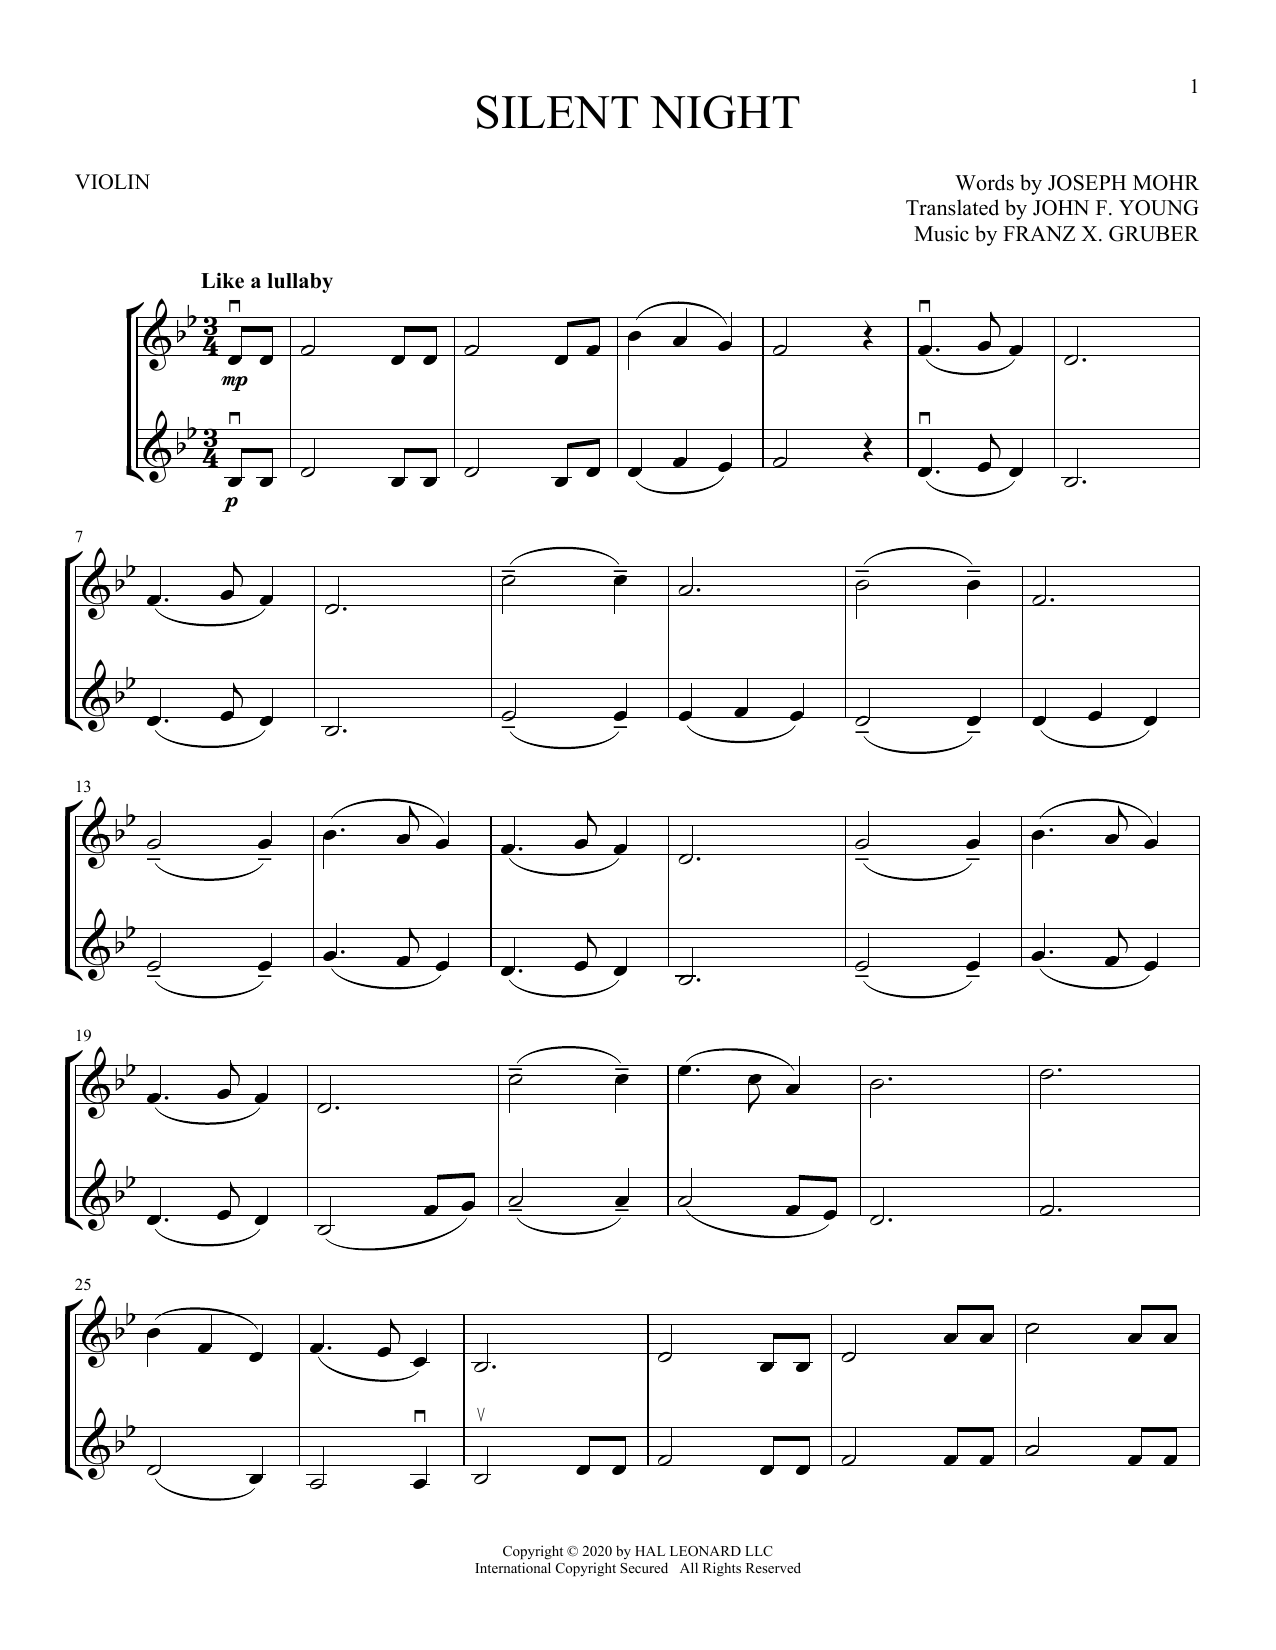 Silent Night (Violin Duet) von Joseph Mhr and Franz Gruber